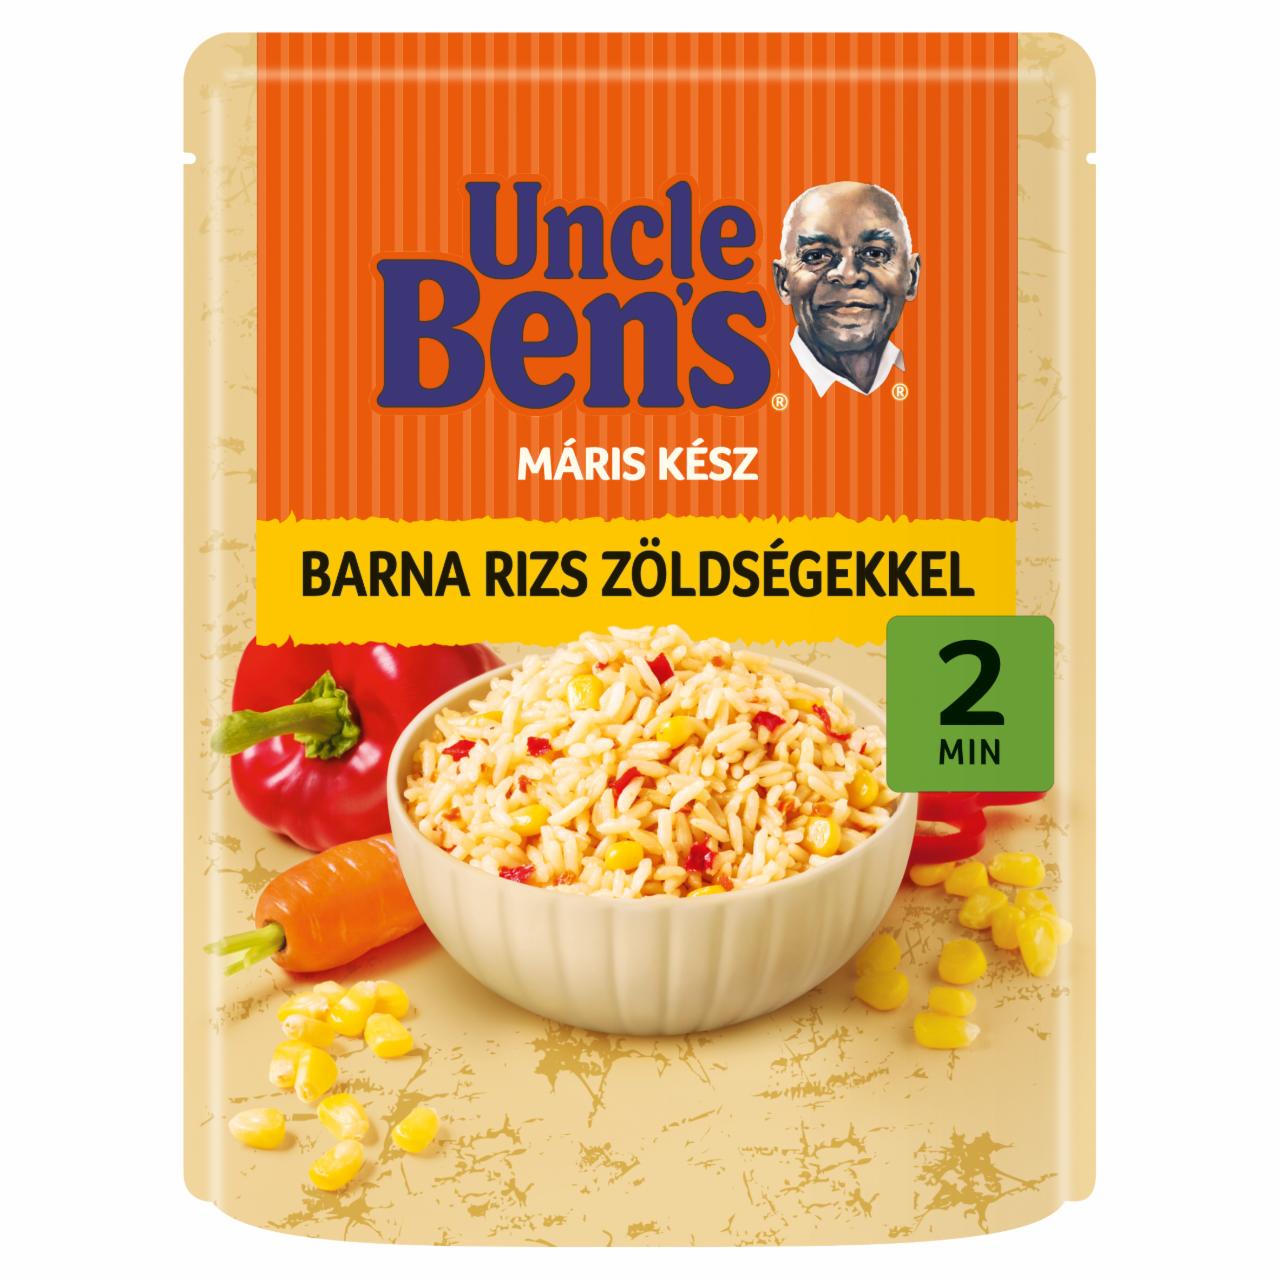 Képek - Uncle Ben's barna rizs zöldségekkel 250 g